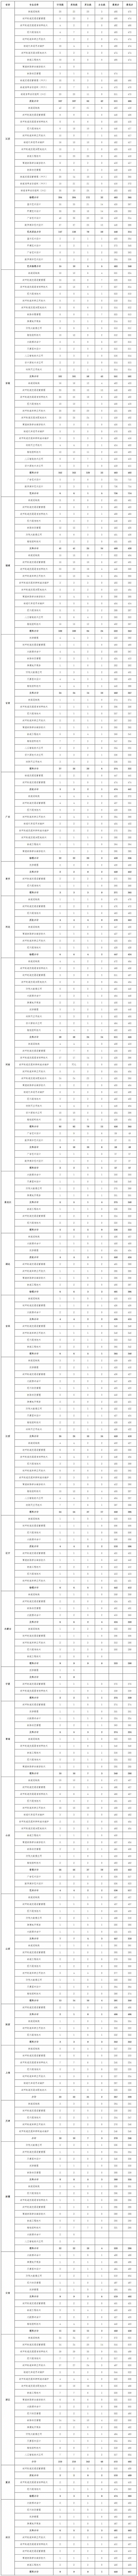 南京铁道职业技术学院2021普招各省各专业录取分数线.jpg